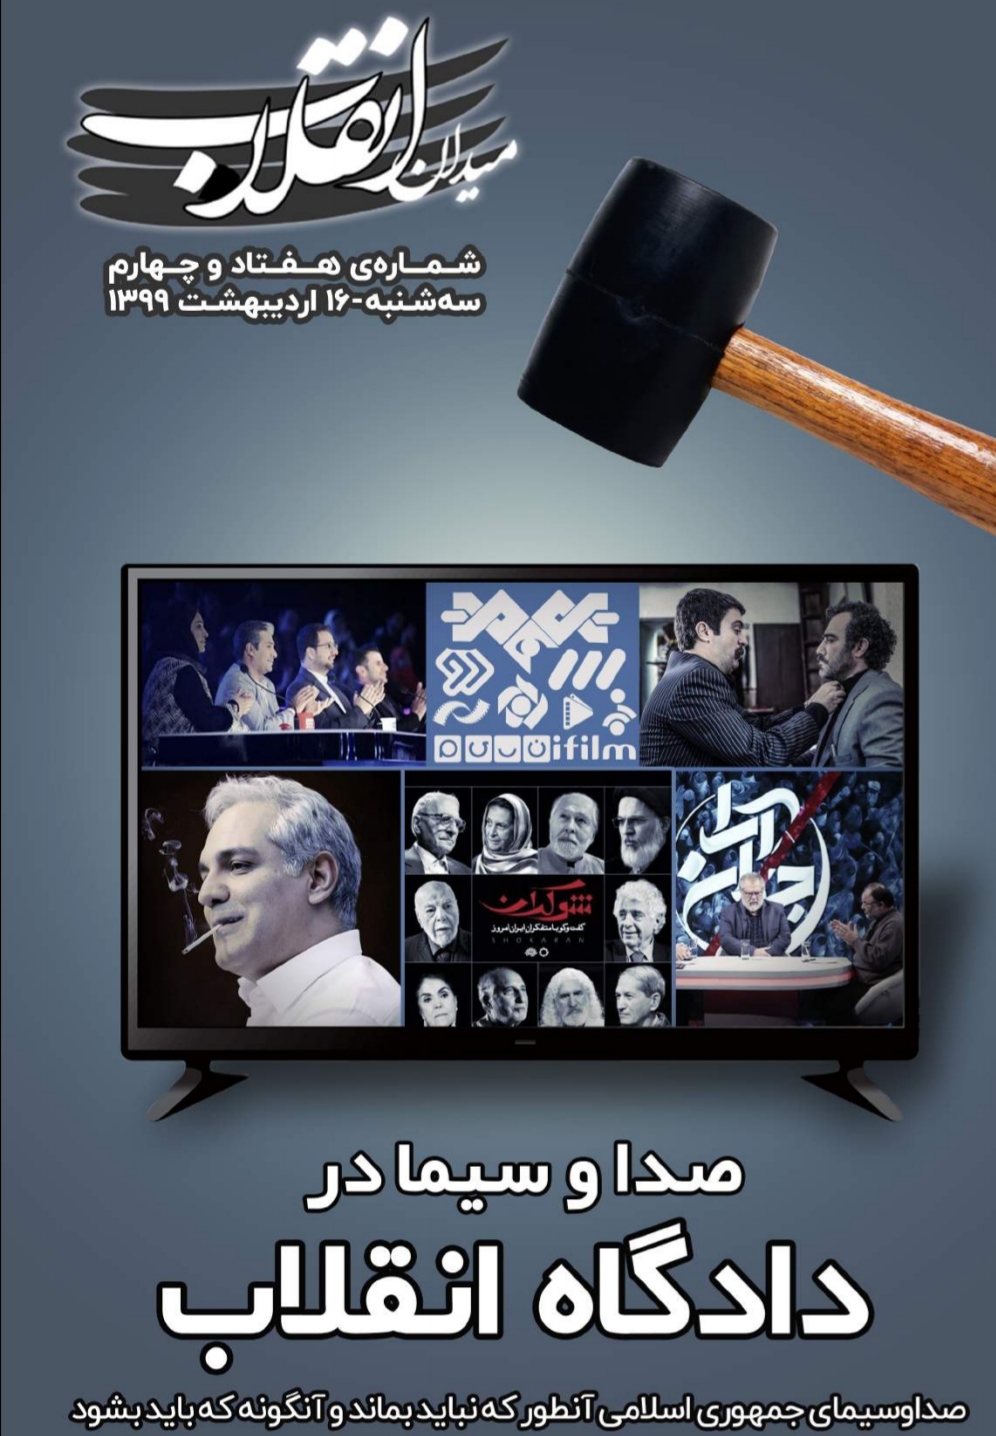 صدا و سیما در دادگاه انقلاب! / شماره ۷۴ نشریه دانشجویی میدان انقلاب منتشر شد